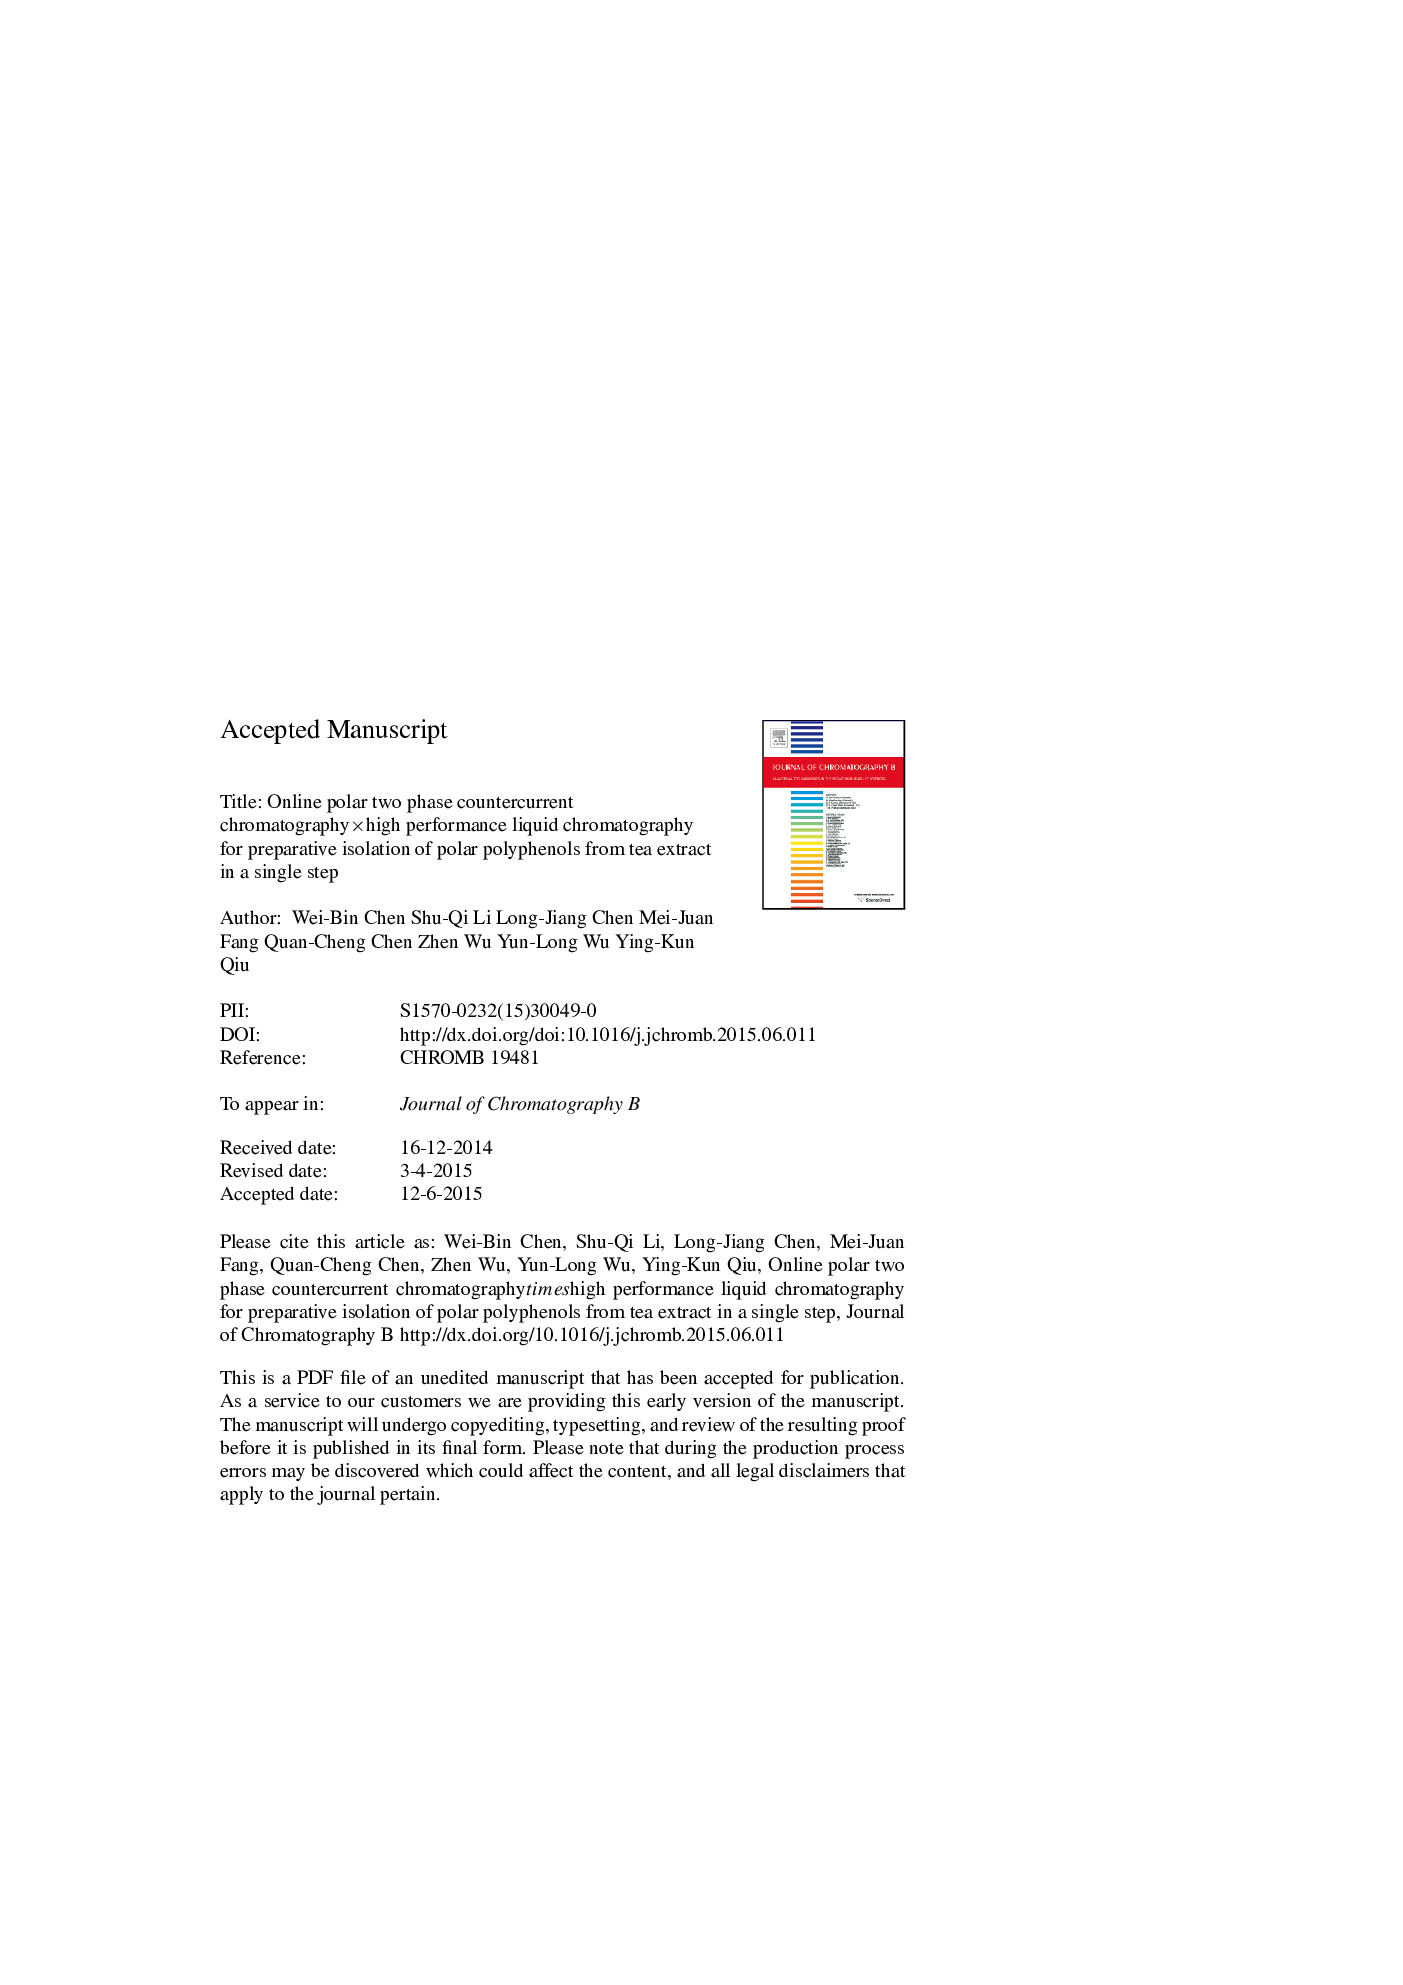 کروماتوگرافی مقطعی با دو فاز ضد جریان کروماتوگرافی متقاطع آنلاین: یک کروماتوگرافی مایع با کارایی بالا برای جداسازی تهیه پلی فنول های قطبی از عصاره چای در یک مرحله 